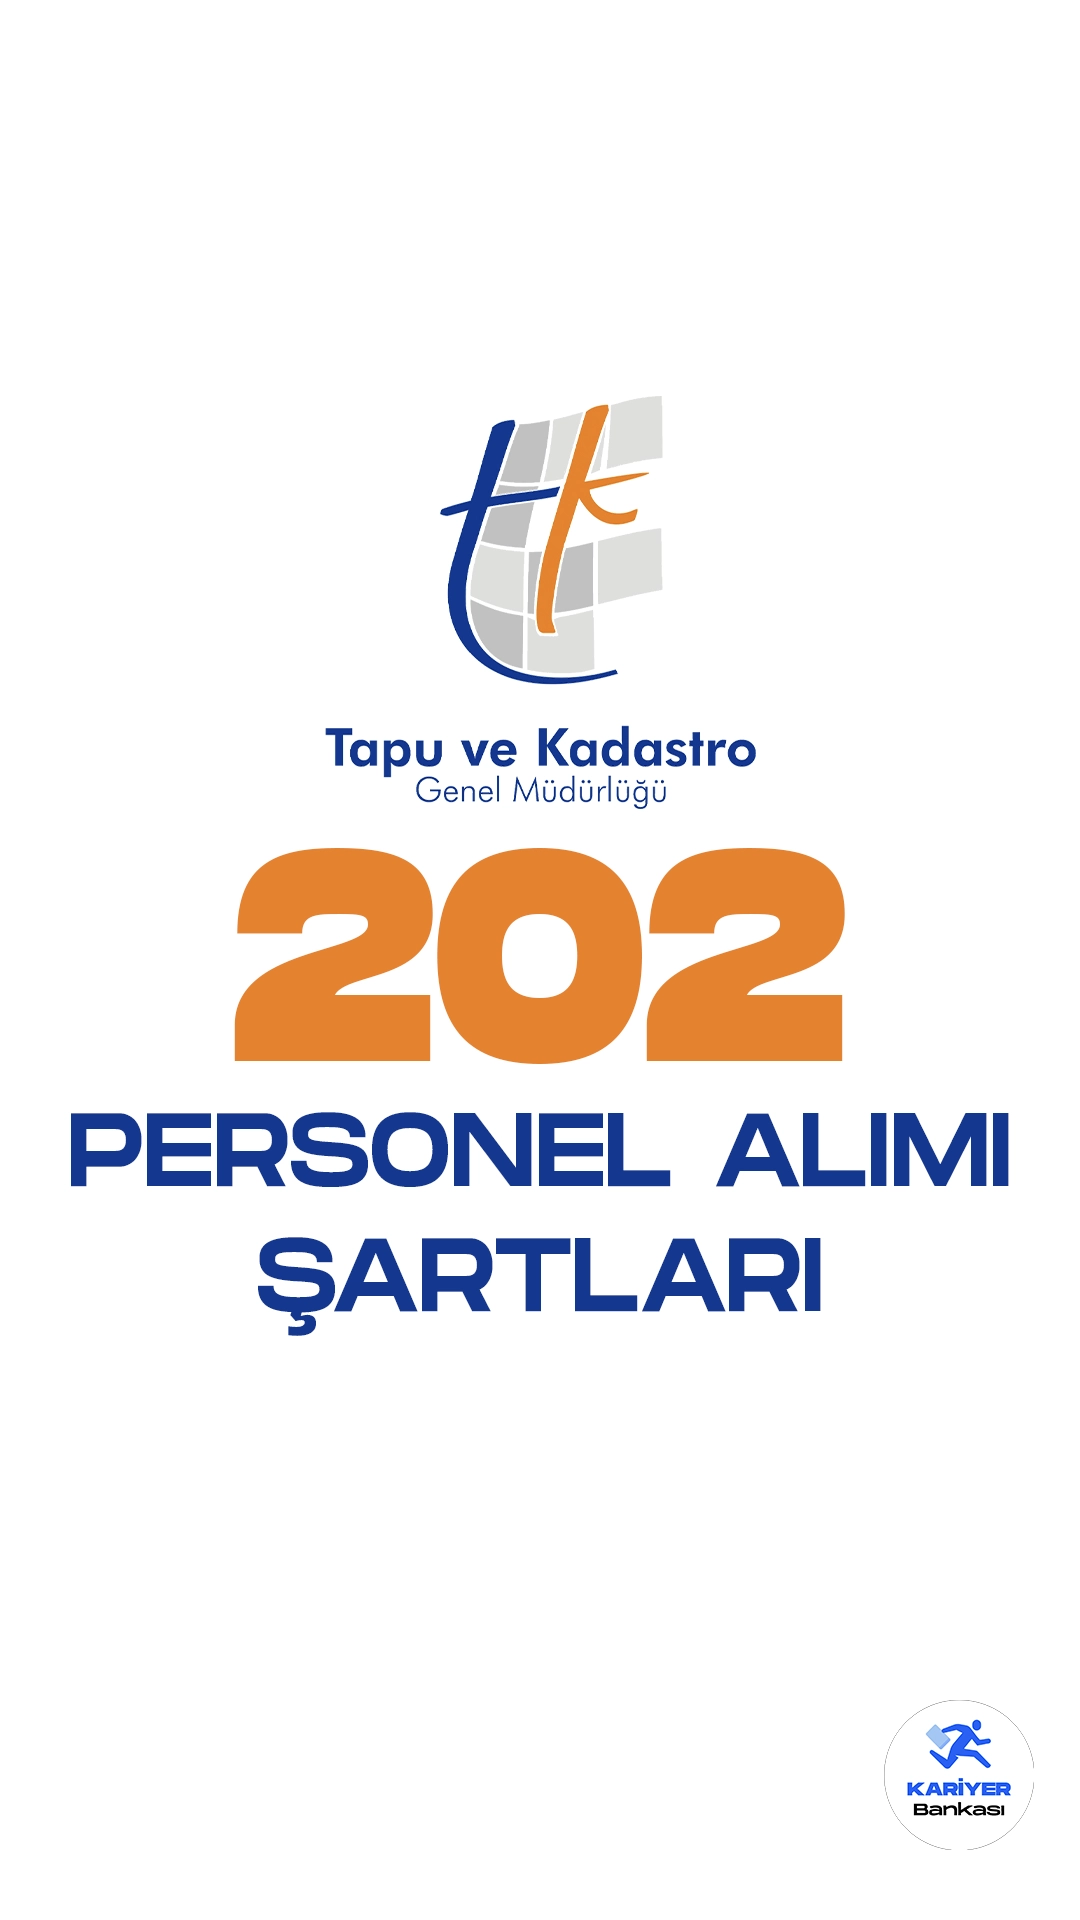 Tapu ve Kadastro Genel Müdürlüğü 202 personel alımı yapacak. Başvuru şartları ve başvuru tarihlerine dair detaylar bu haberimizde.